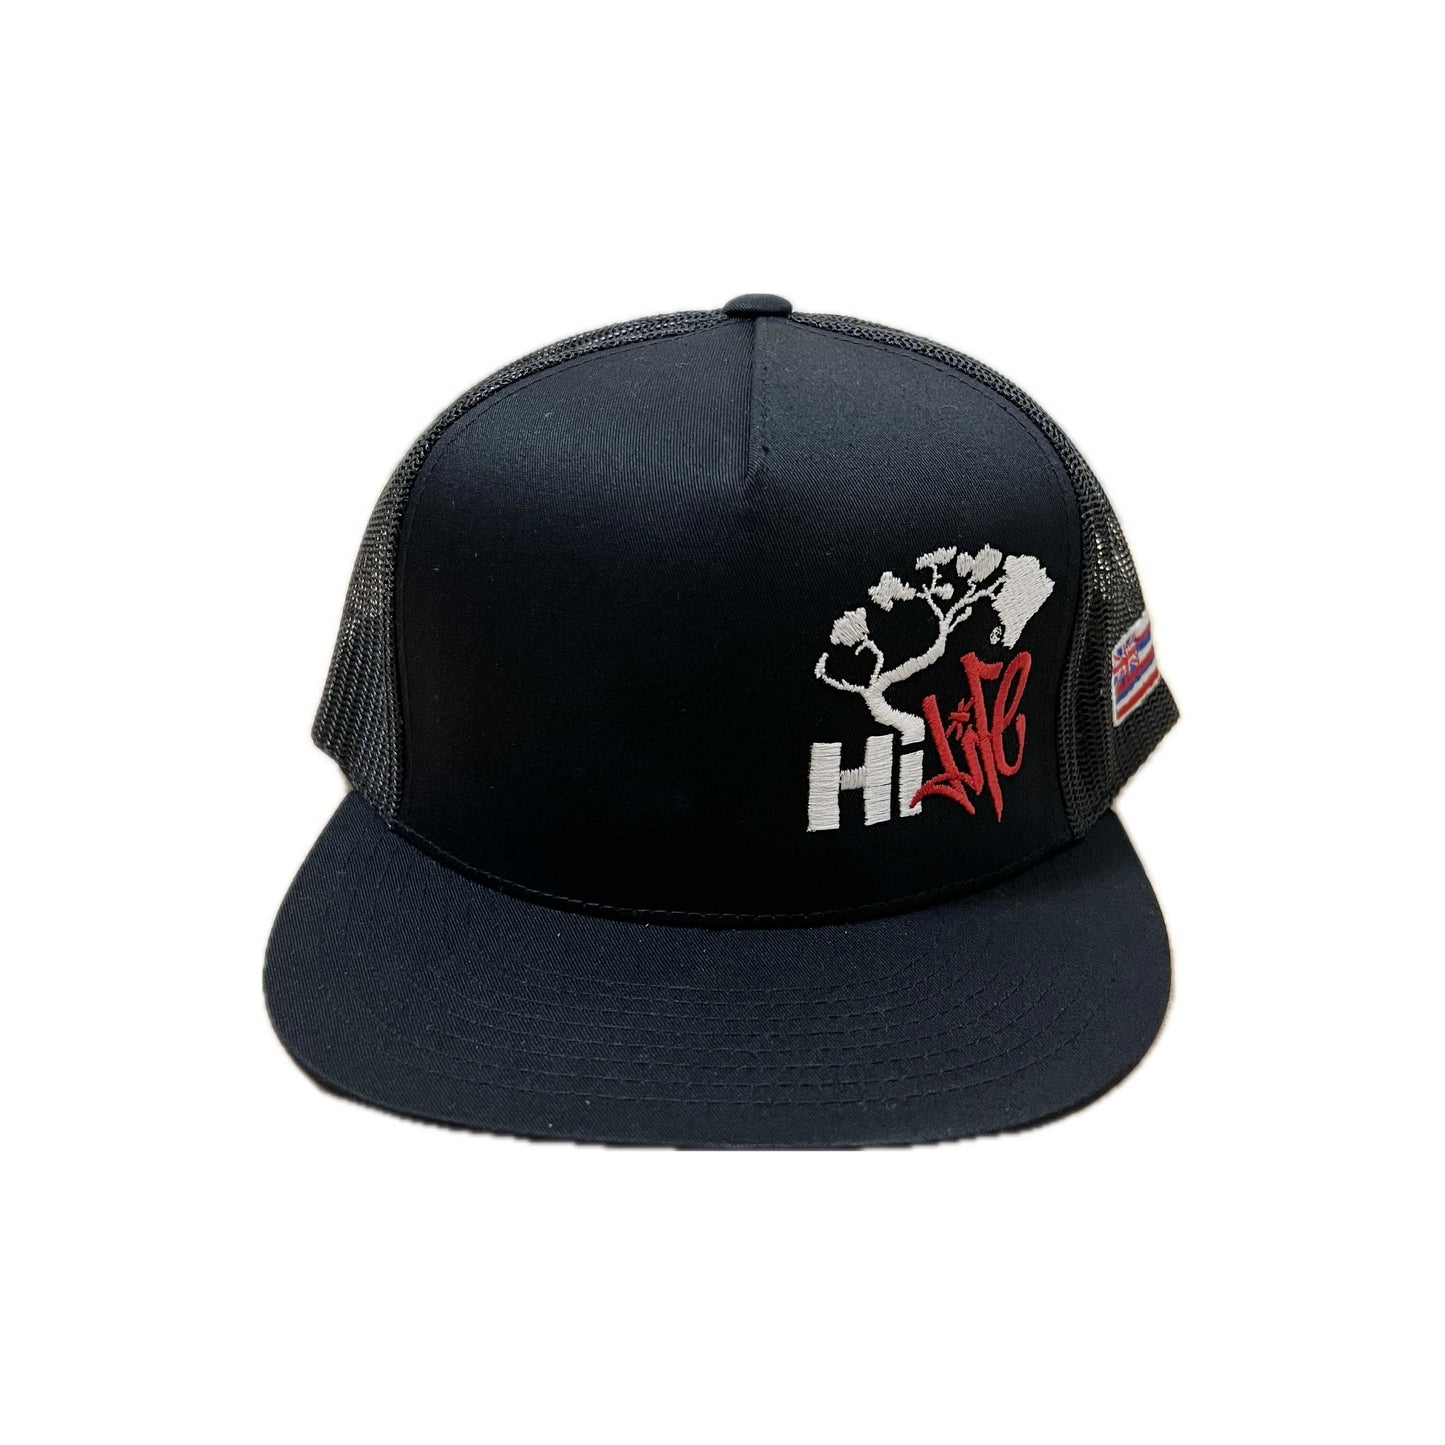 Hapa Snapback hats Black Mesh